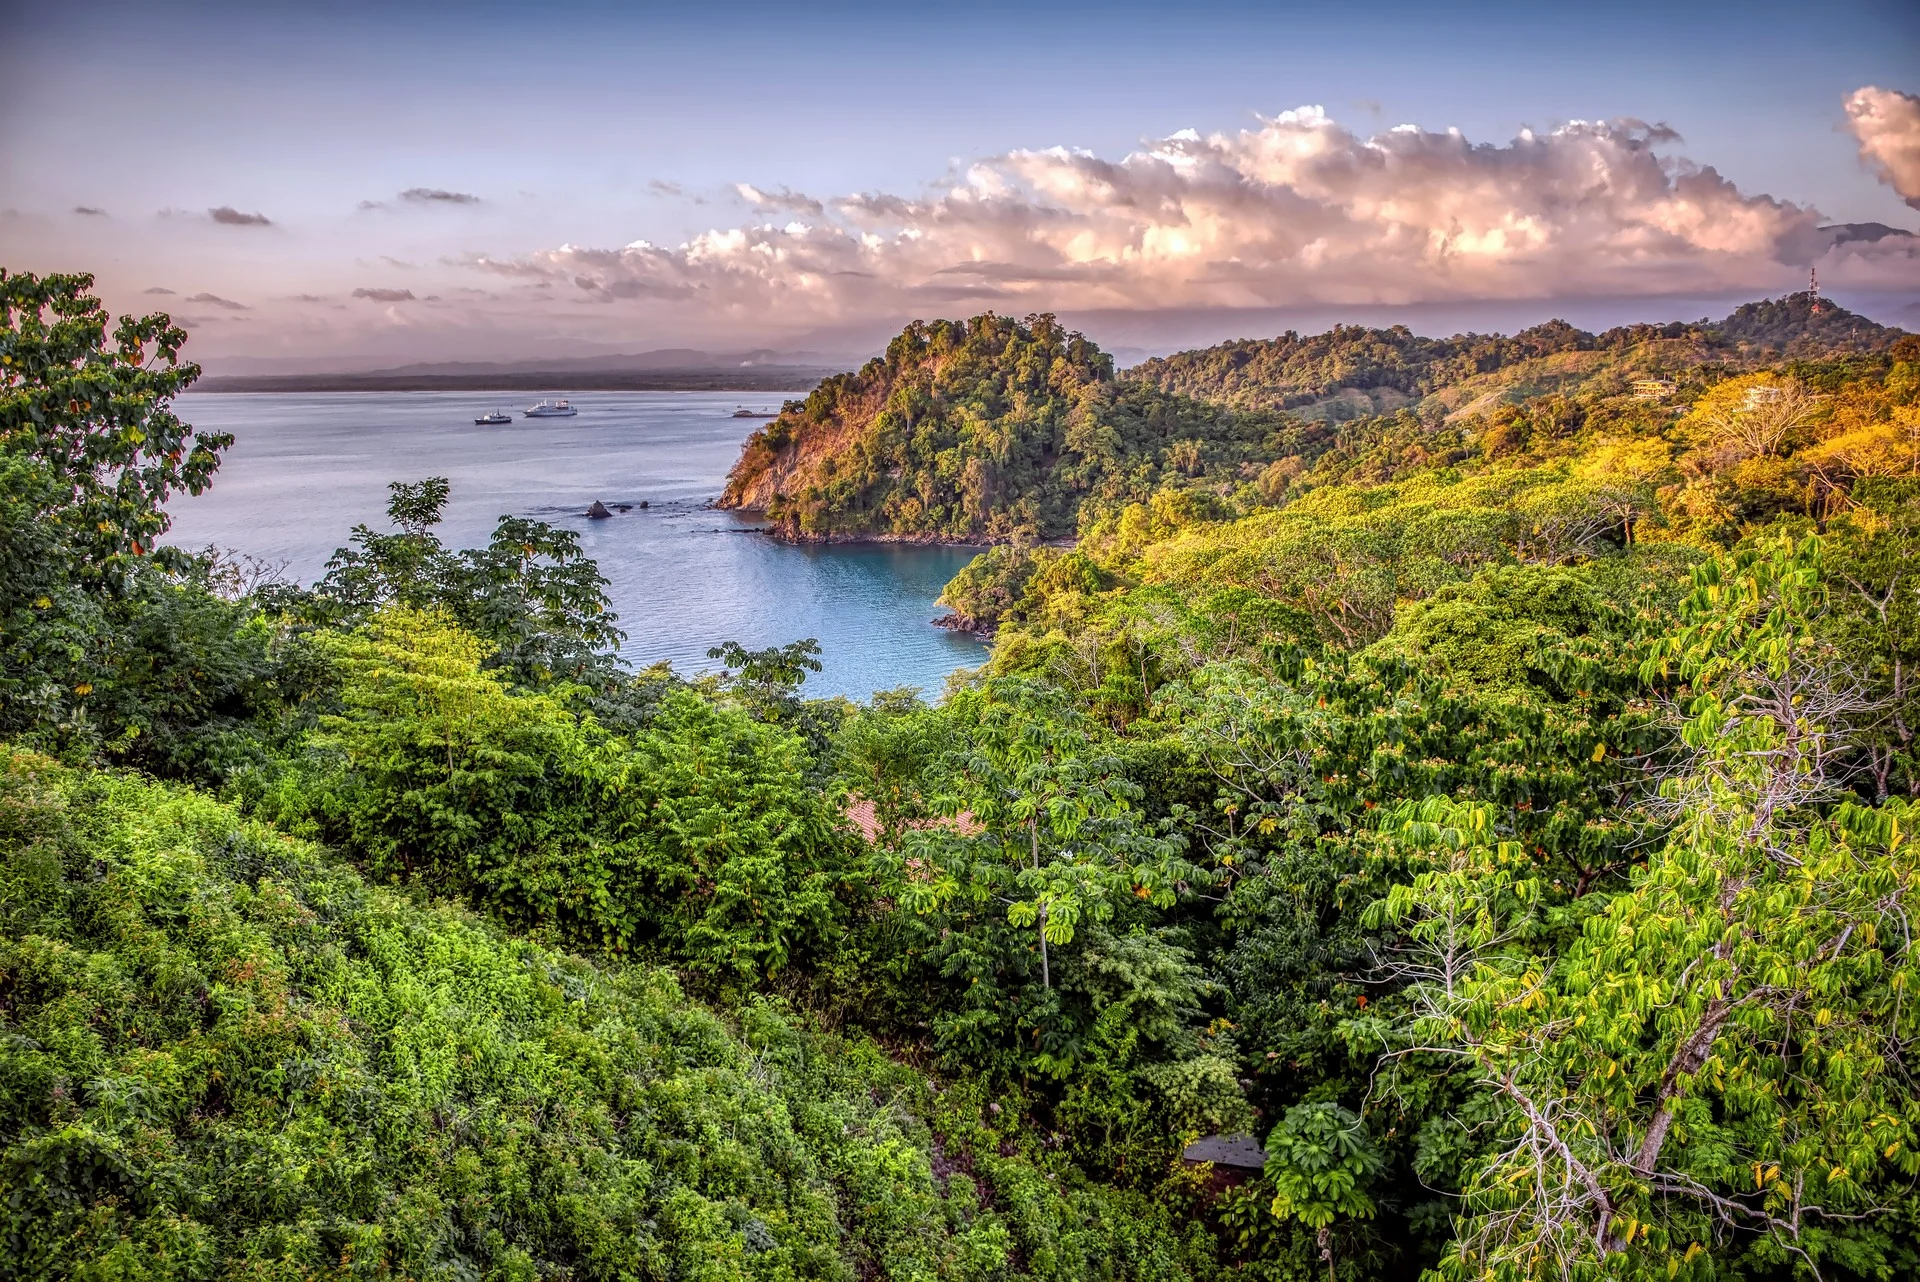 Manuel Antonio National Park in Costa Rica